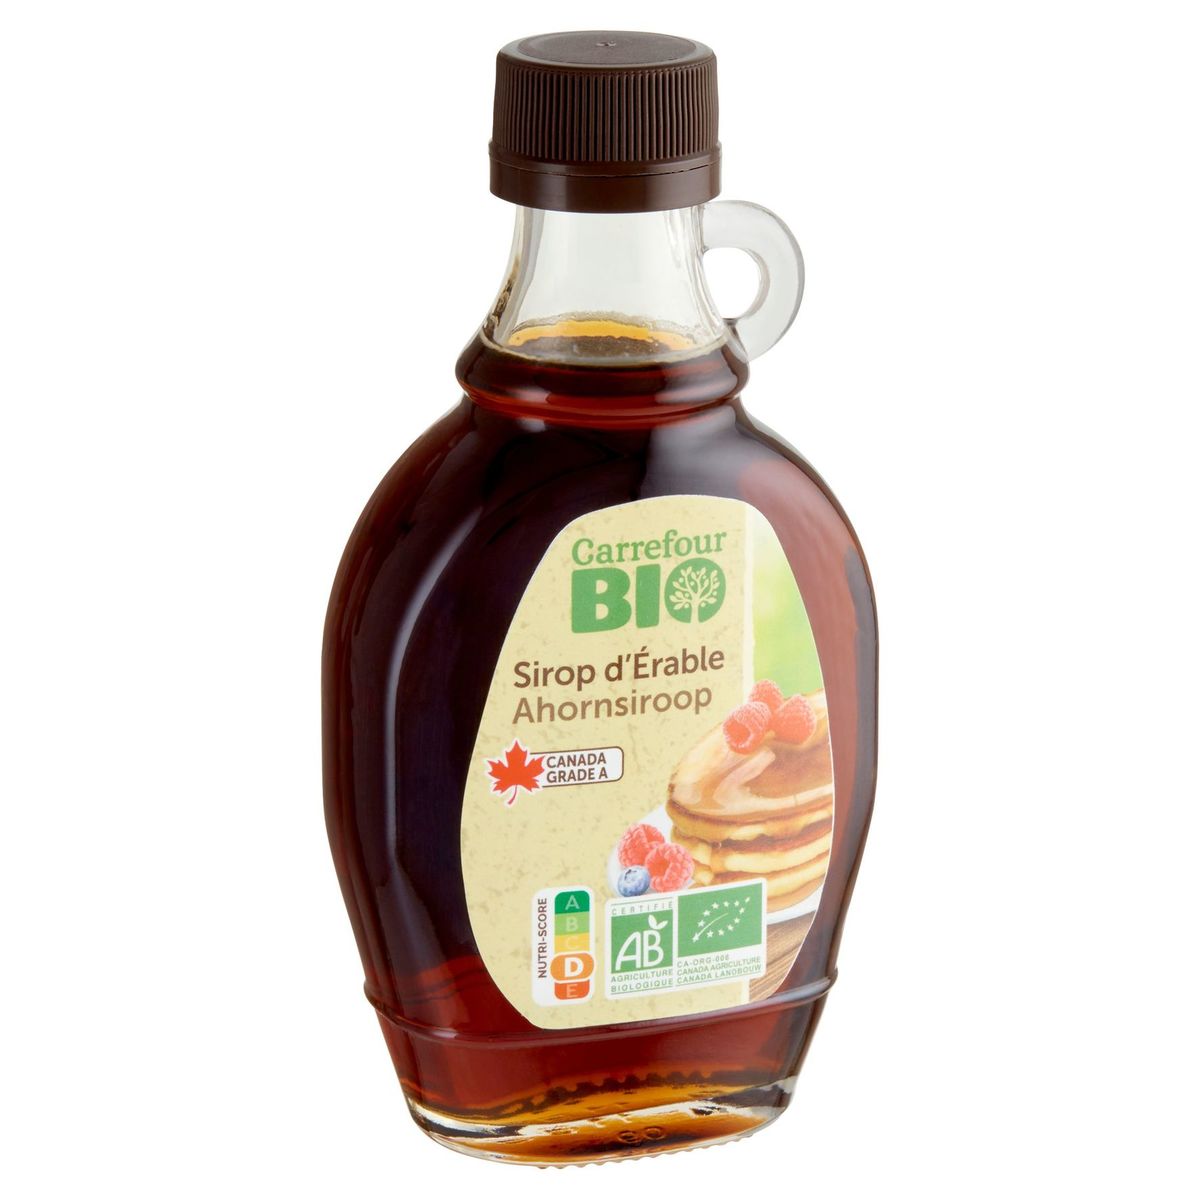 Carrefour Bio Ahornsiroop 250 g